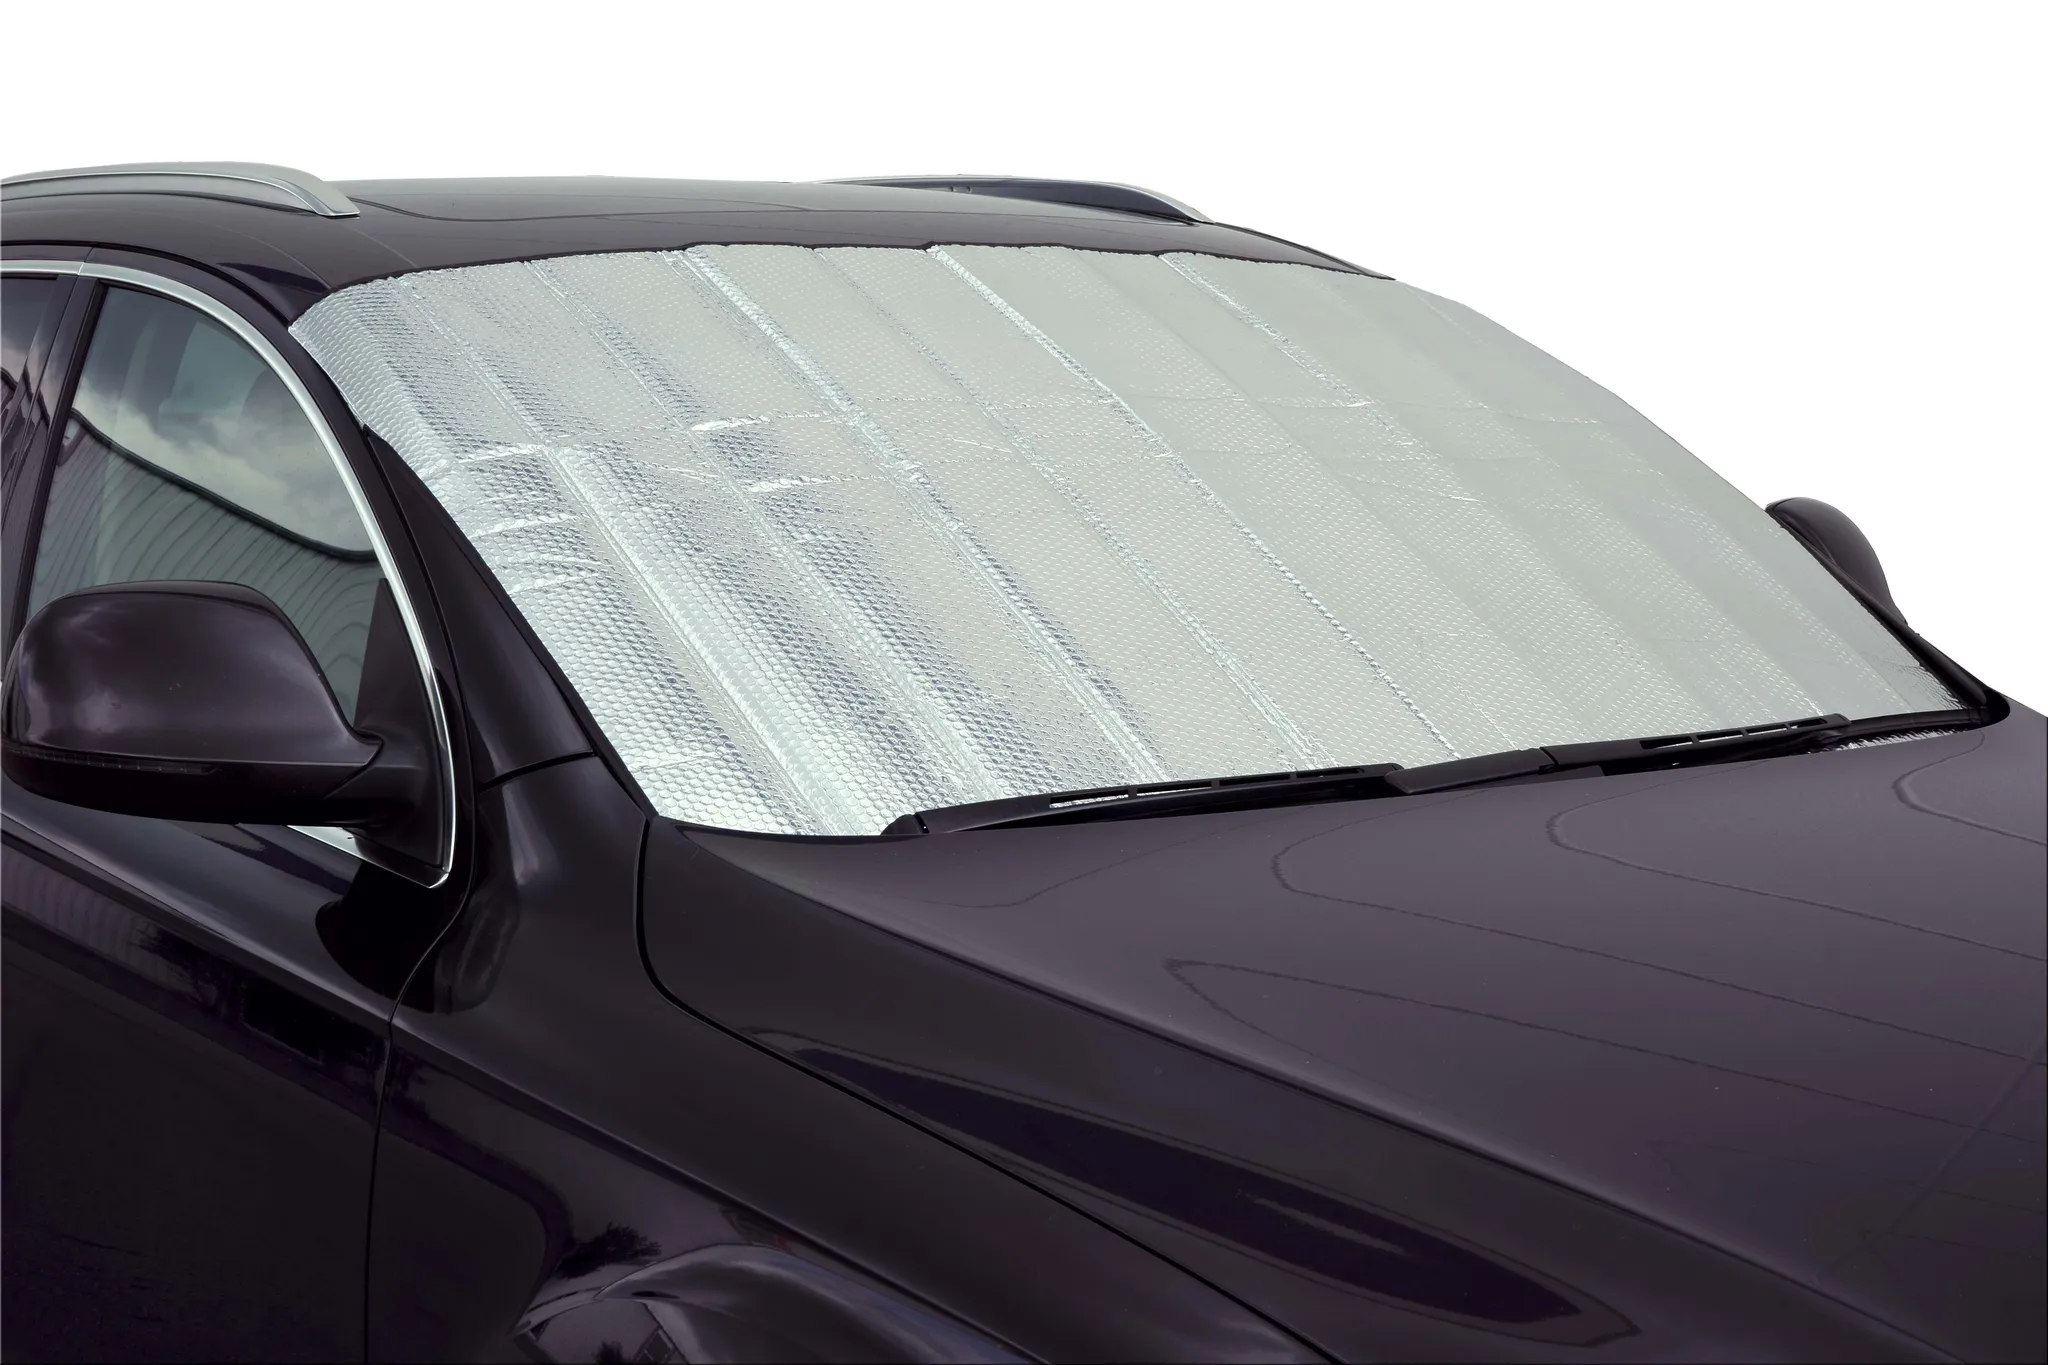 Auto Windschutzscheibe Sonnenschirm Suv Frontscheibe Schutz Eis